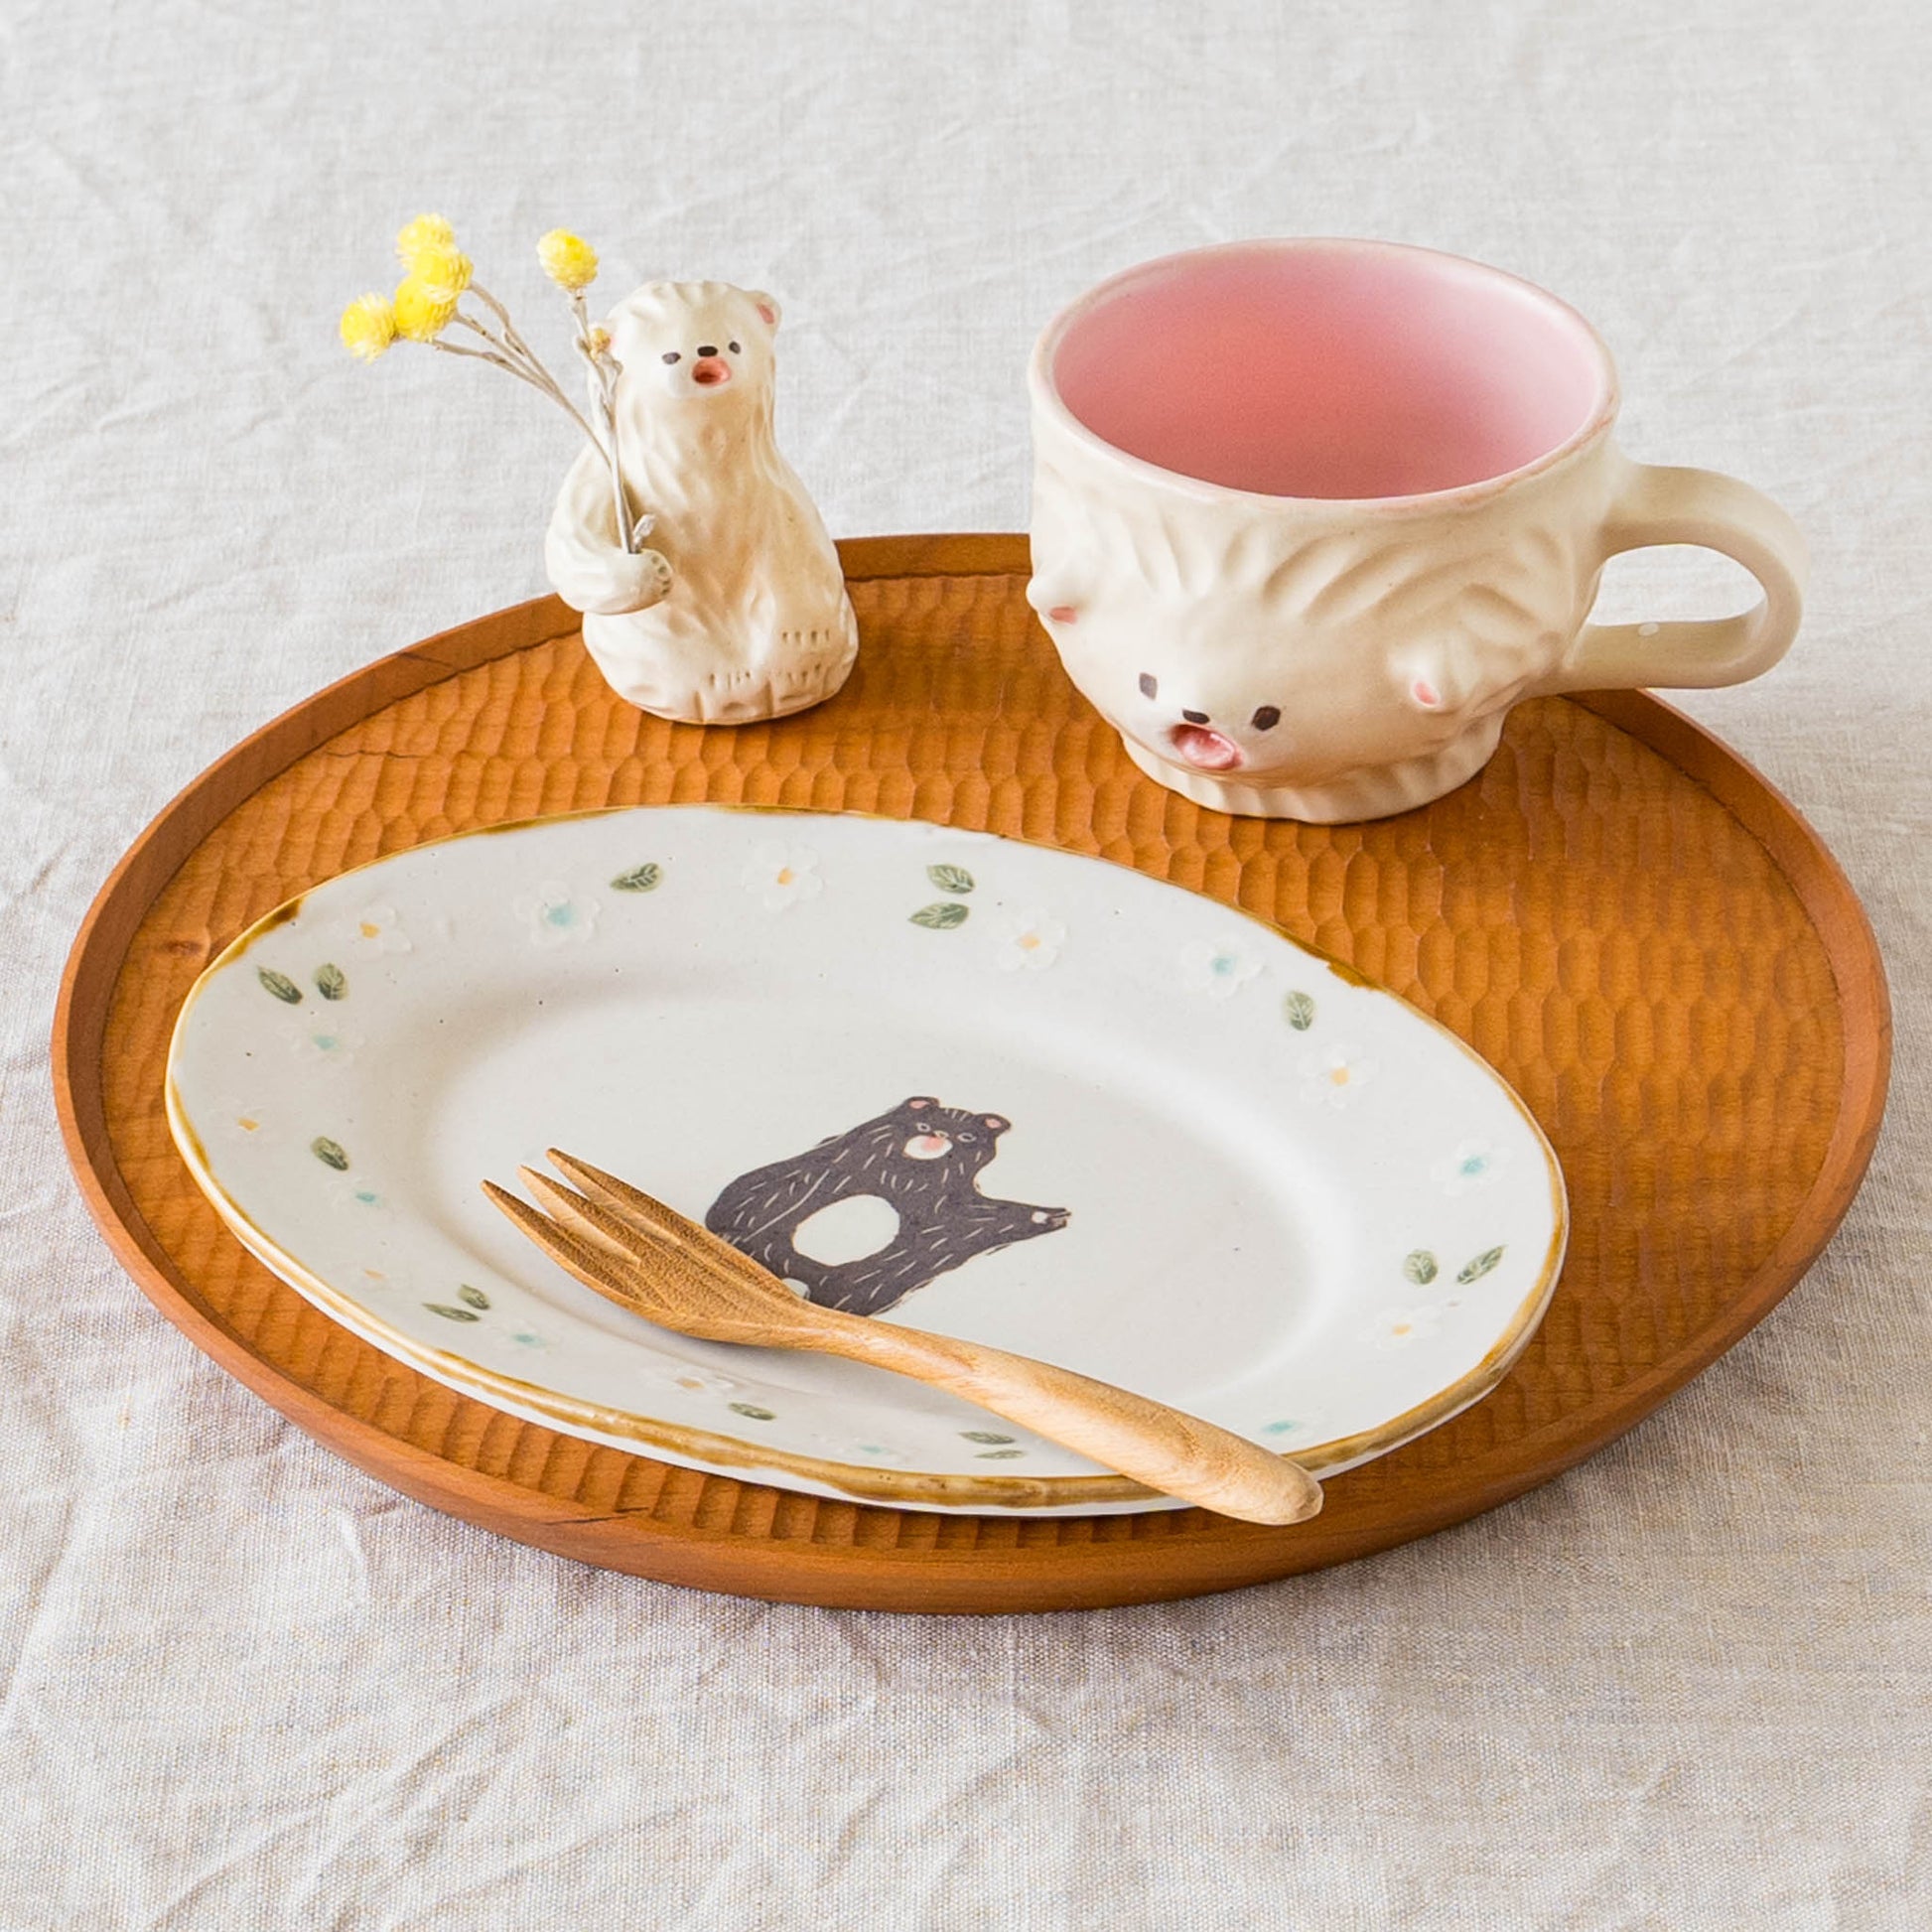 加藤美紀子さんのクママグ白くまと楕円皿リム花